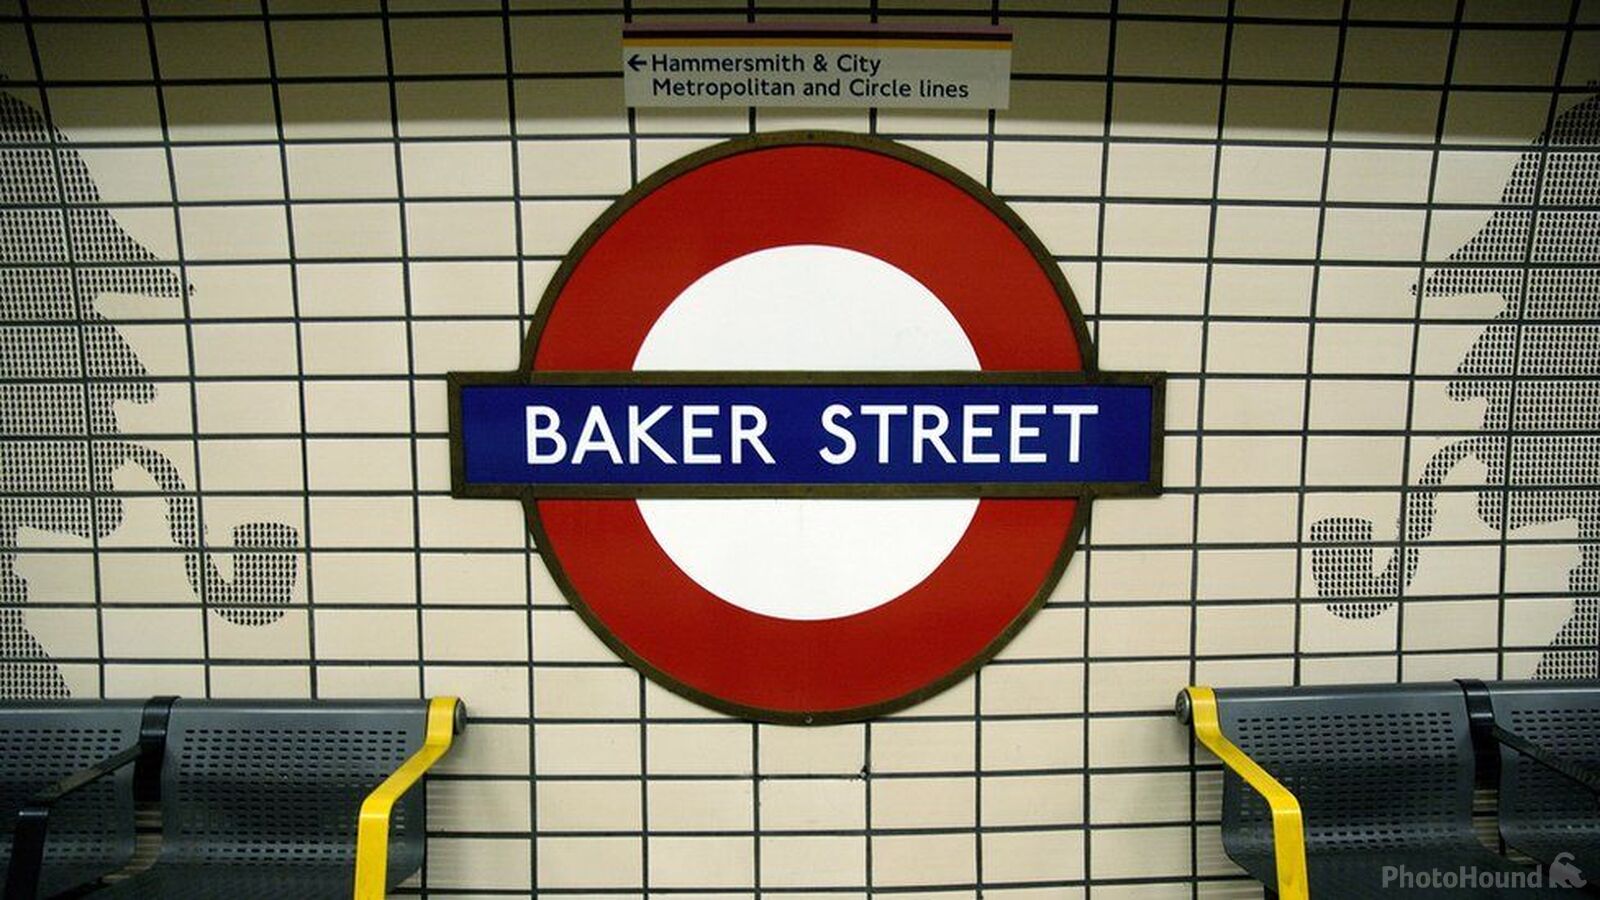 Image of Baker Street Tube Station by John Dolan